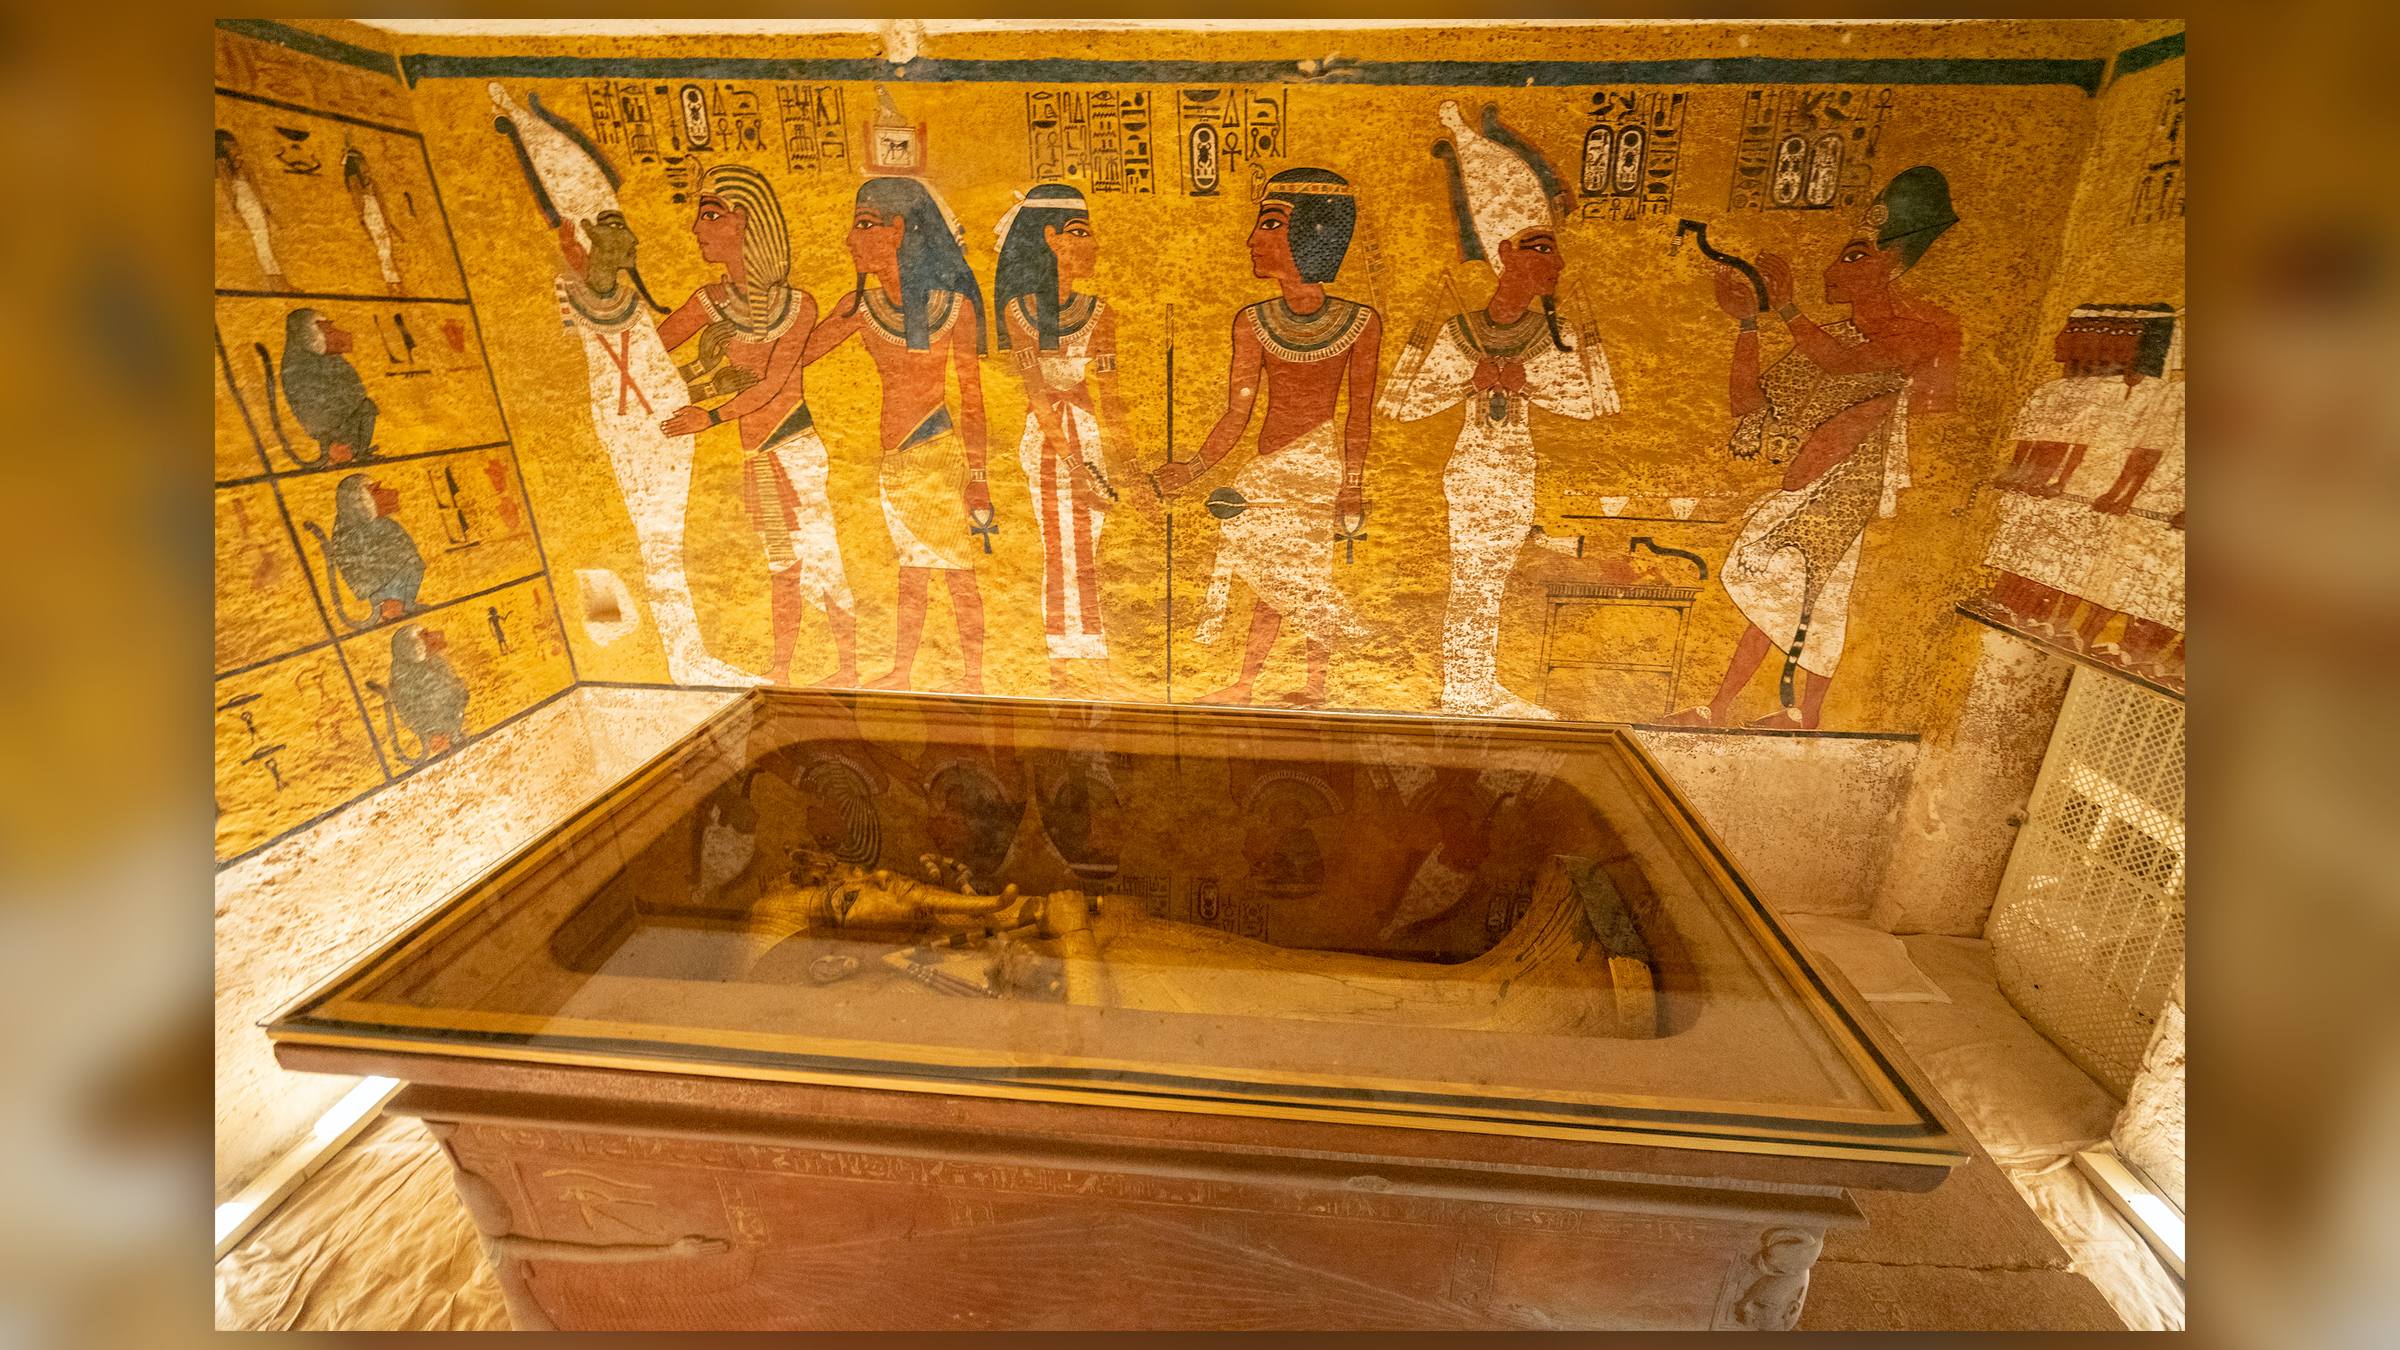 Uma foto do túmulo do faraó Tutancâmon no Vale dos Reis em Luxor.  O caixão fica no centro da sala, com pinturas egípcias nas paredes.